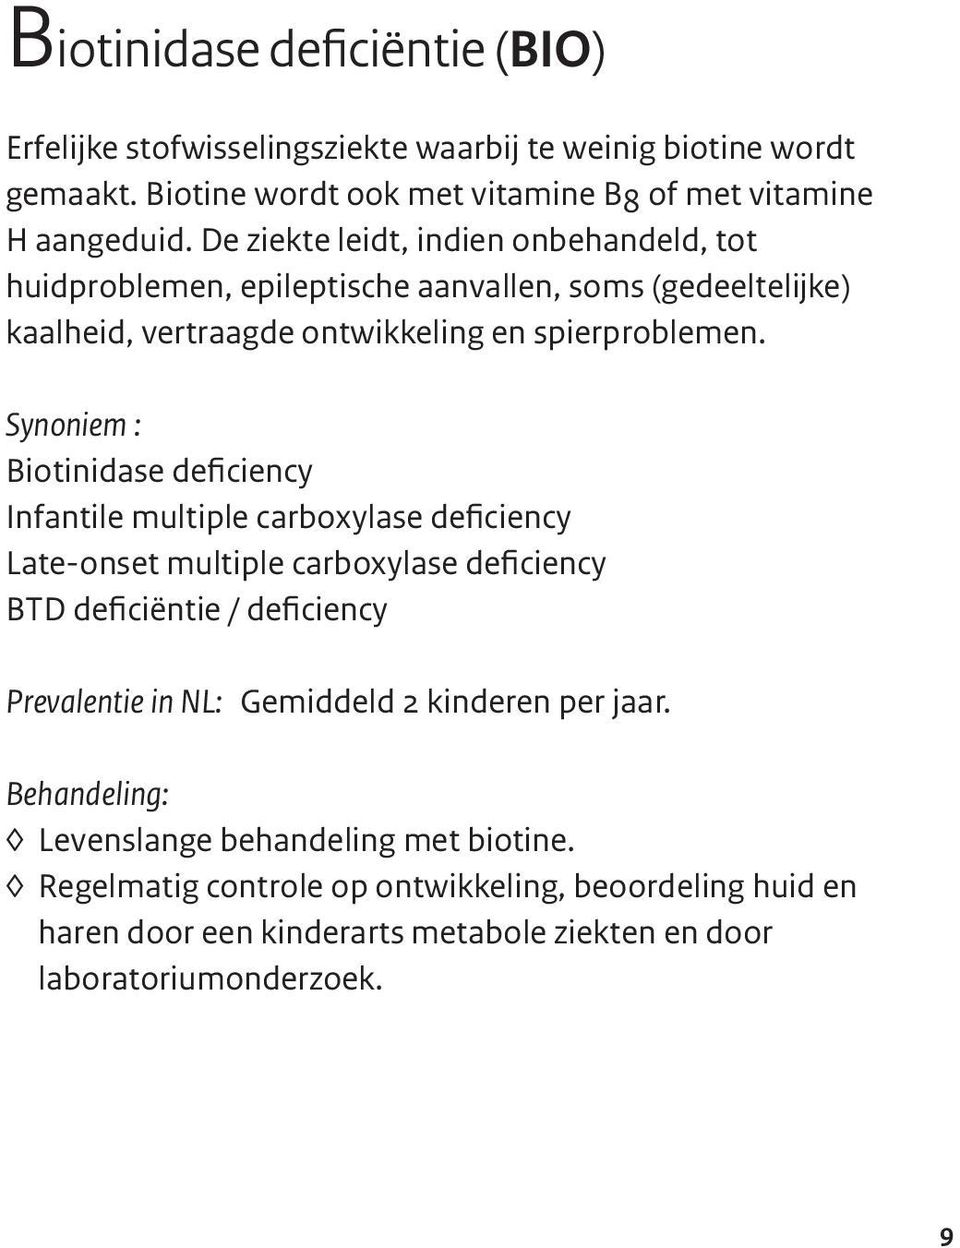 Synoniem : Biotinidase deficiency Infantile multiple carboxylase deficiency Late-onset multiple carboxylase deficiency BTD deficiëntie / deficiency Prevalentie in NL: